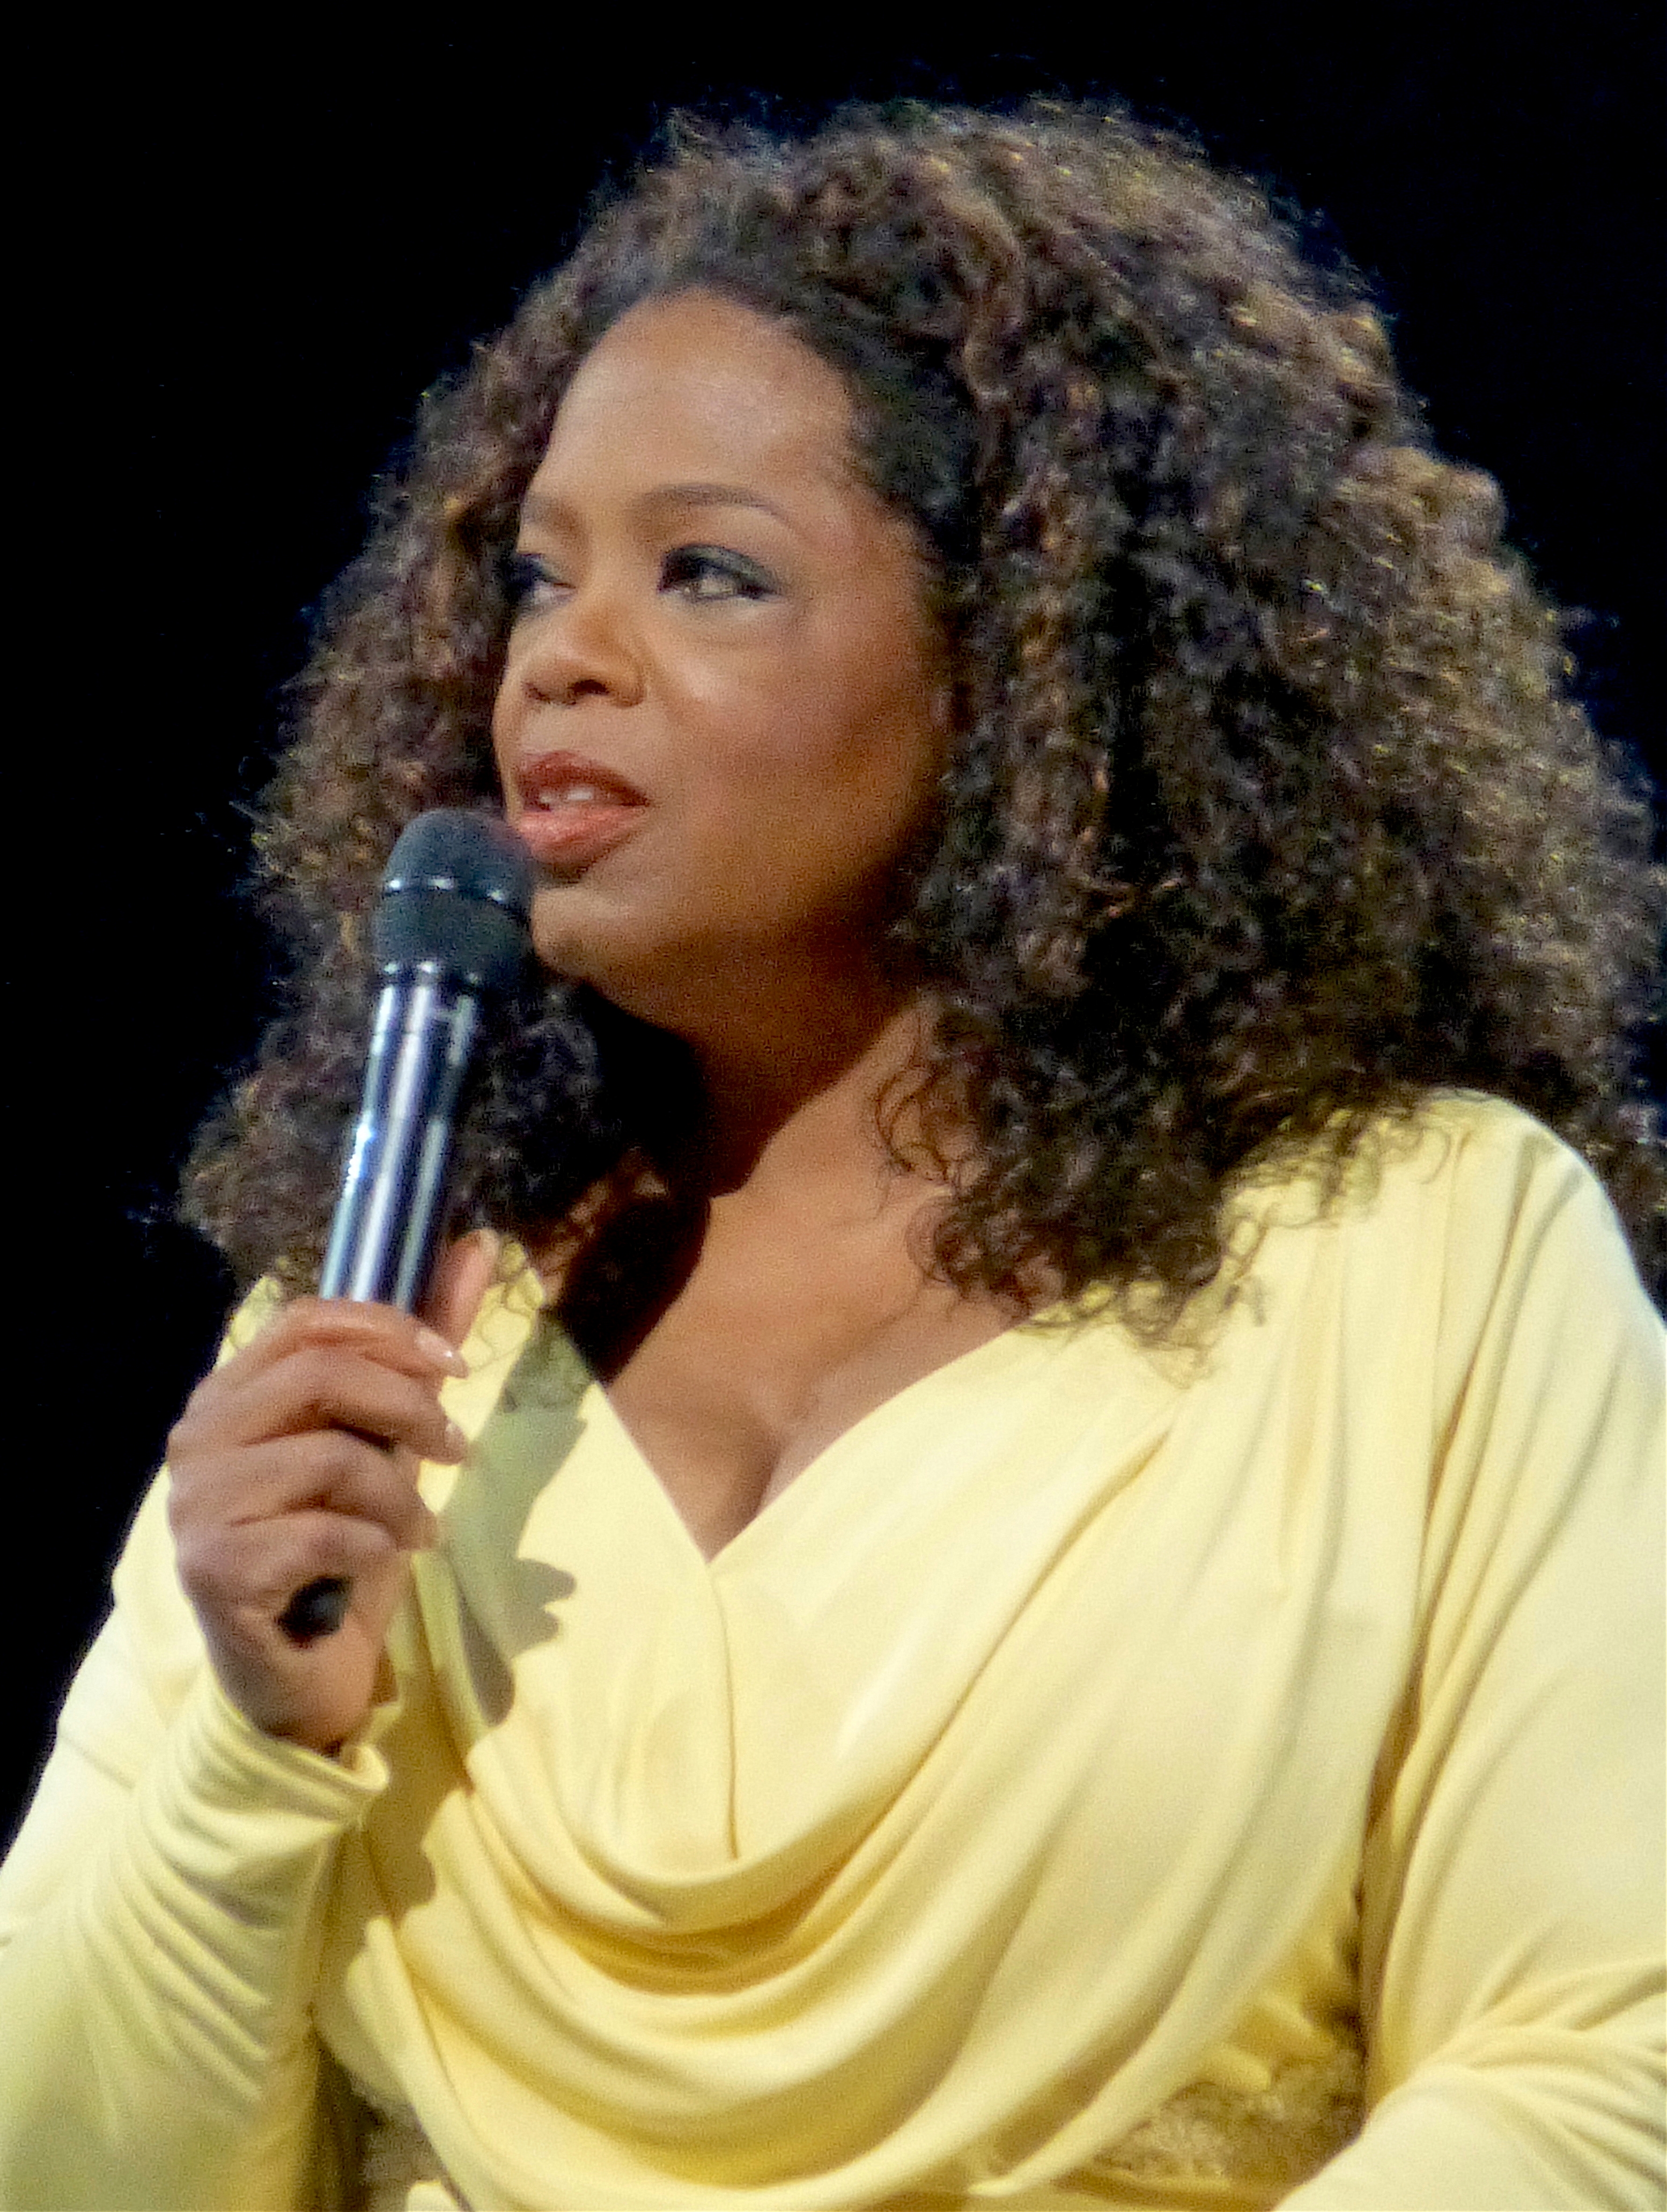 auteur Oprah Winfrey de la citation La plus grande aventure que vous puissiez prendre est de vivre la vie de vos rêves.